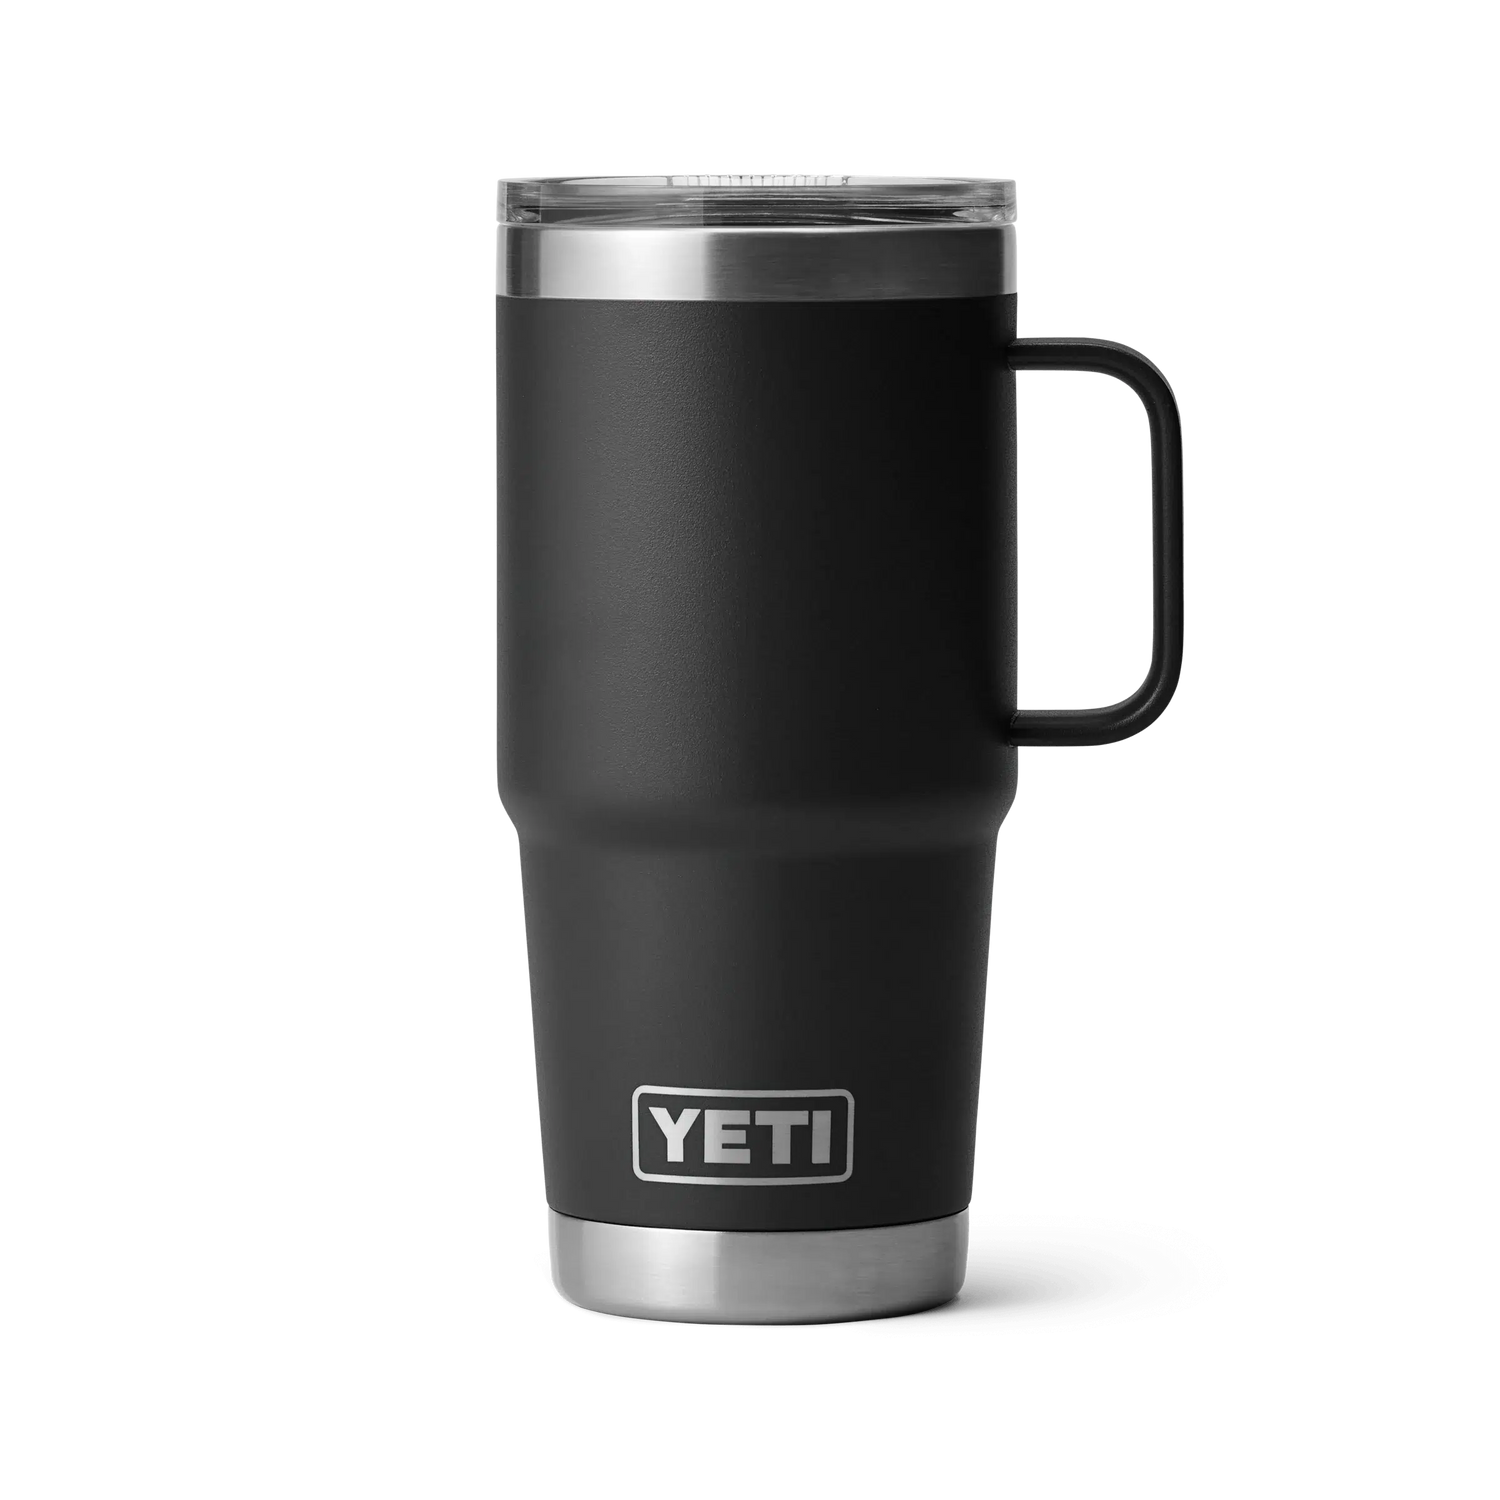 Yeti 20oz (591ml) Travel Mug with Stronghold Lid-Coolers & Drinkware-Yeti-Black-Fishing Station